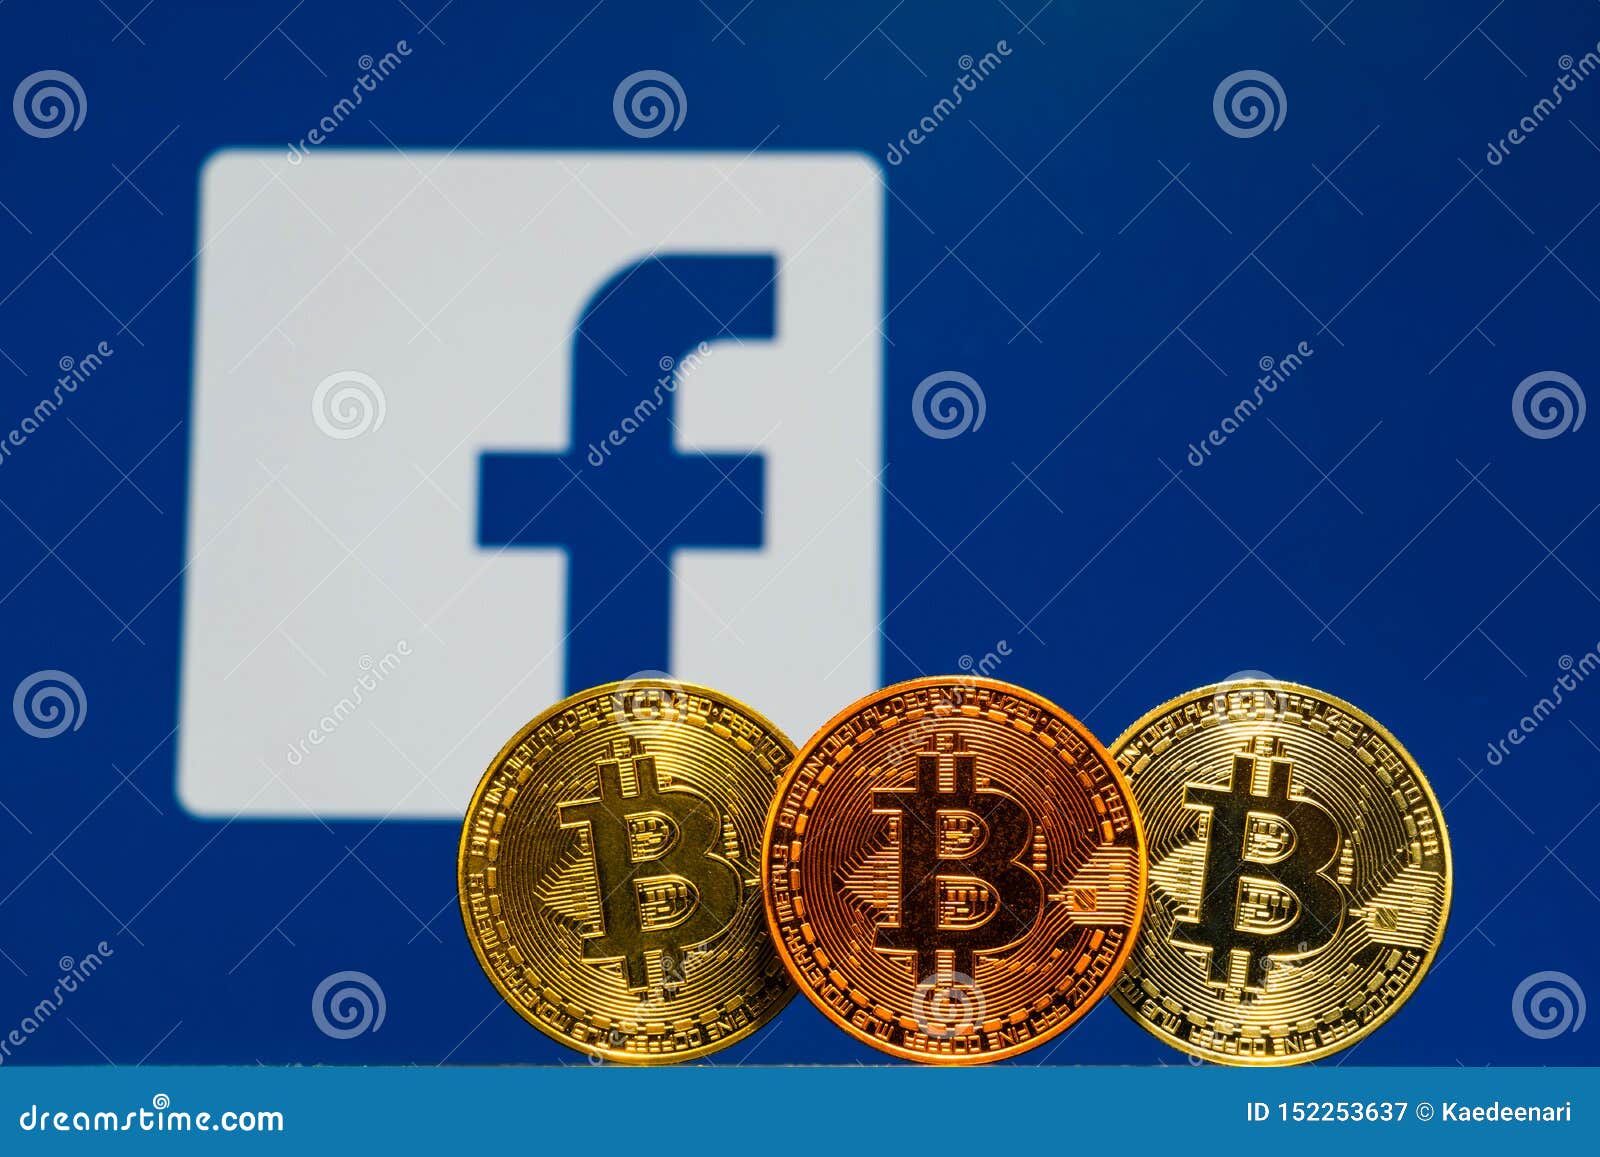 bitcoin and facebook